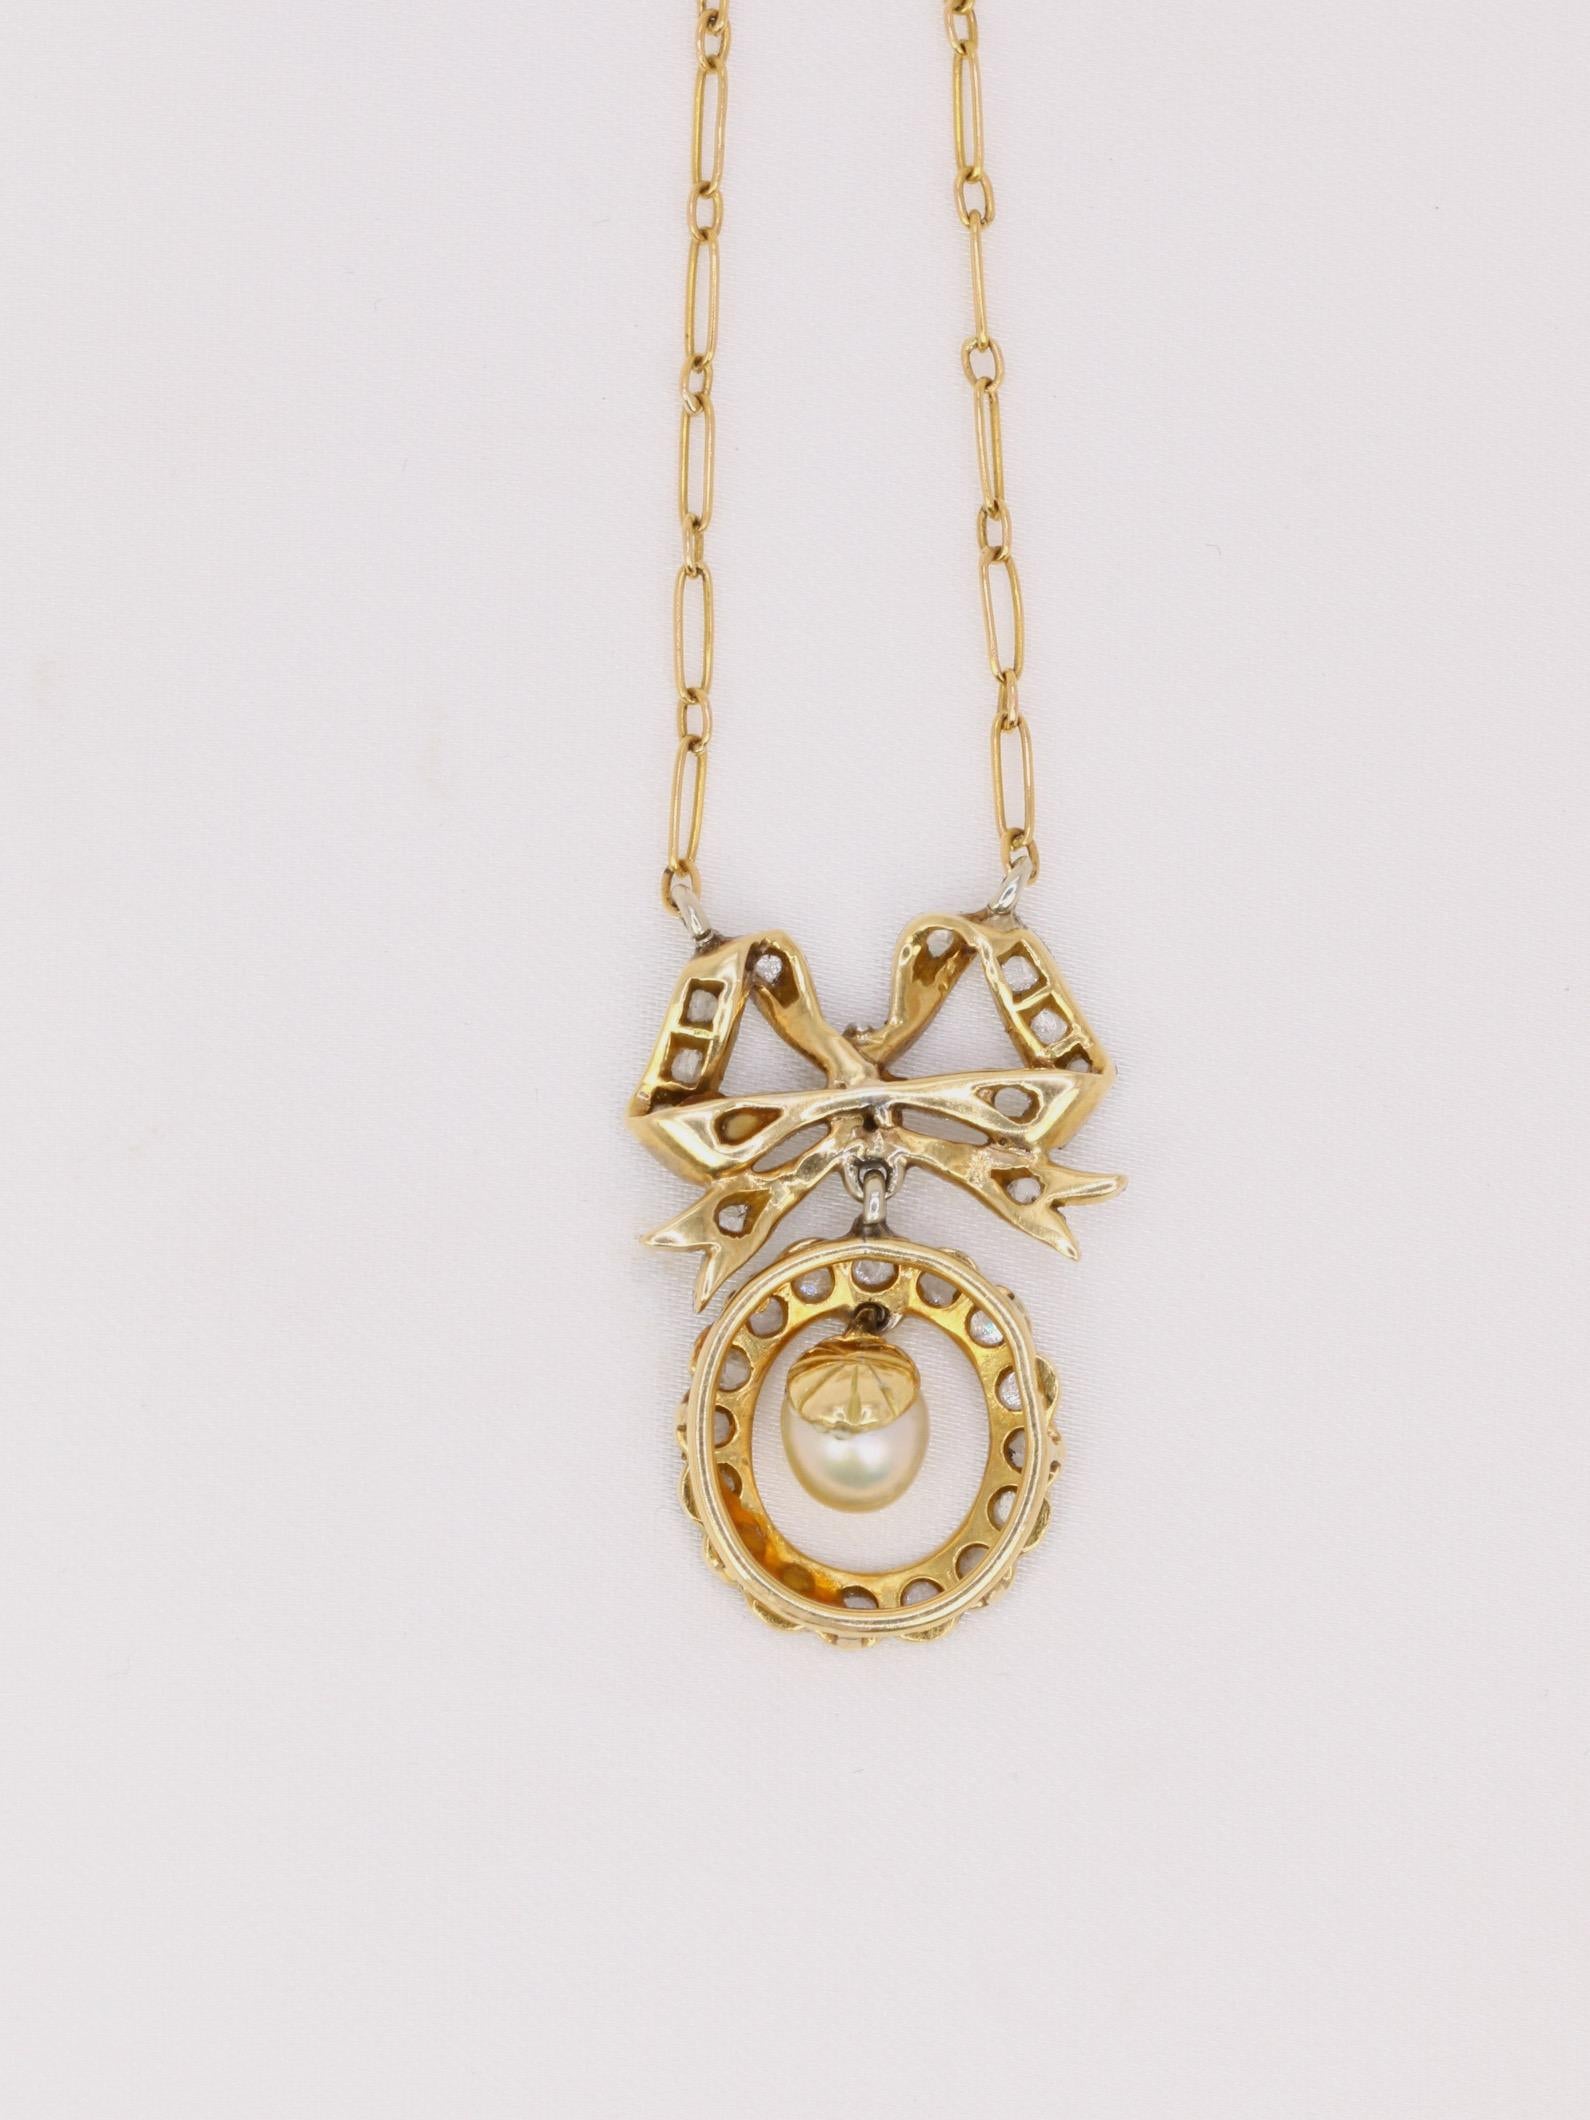 Collier en or 18k (750°/°°) composé d'un nœud Louis XVI surmontant un motif ovale diamanté soutenant une perle fine mobile. Les noeuds de style Louis XVI reviennent à la mode au moment de la période Belle Epoque et ce collier en est un joli exemple.